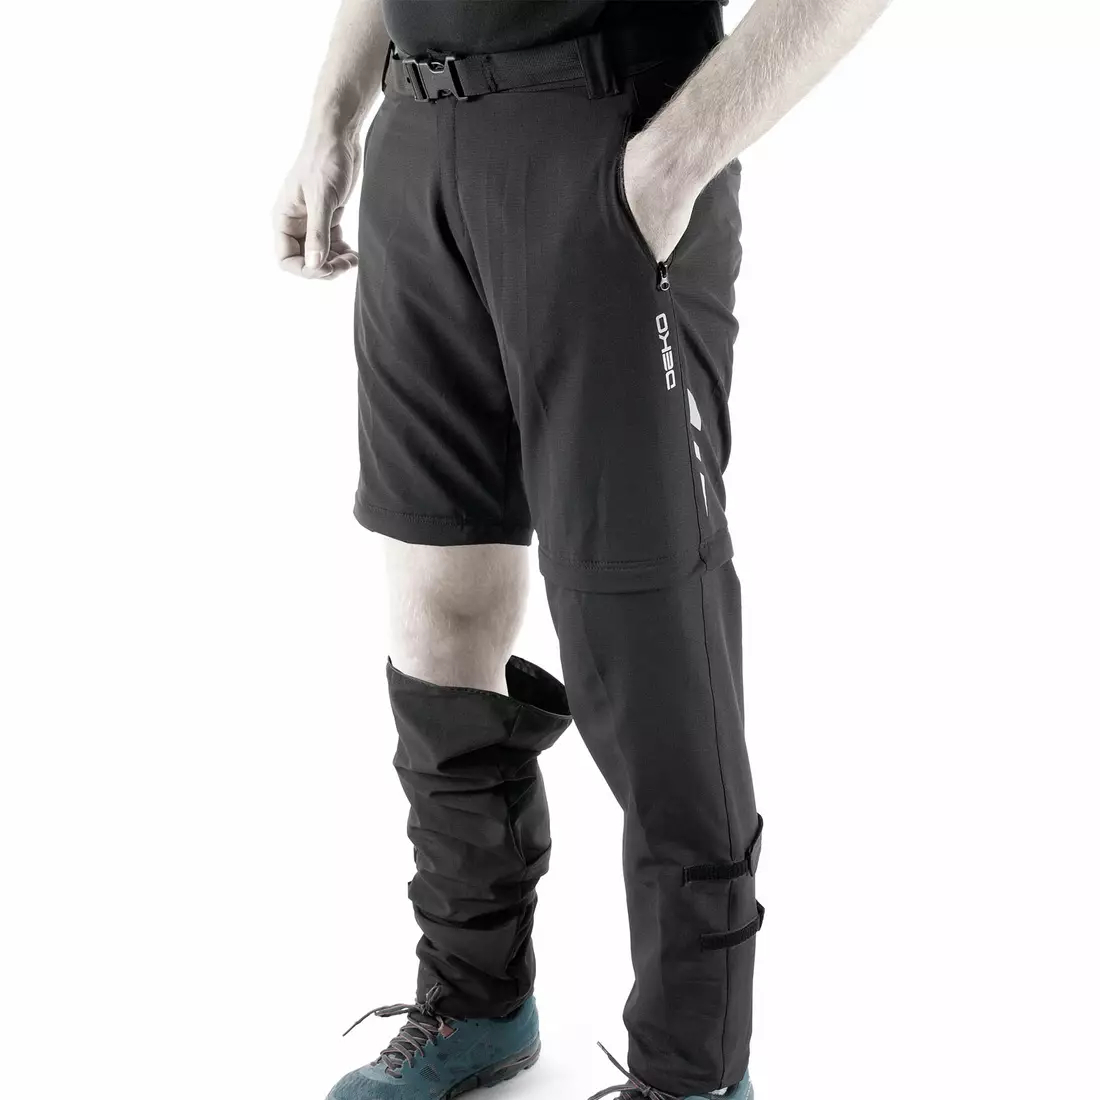 DEKO STR-M-001 Fahrradhose für Männer mit abnehmbaren Beinen, schwarz